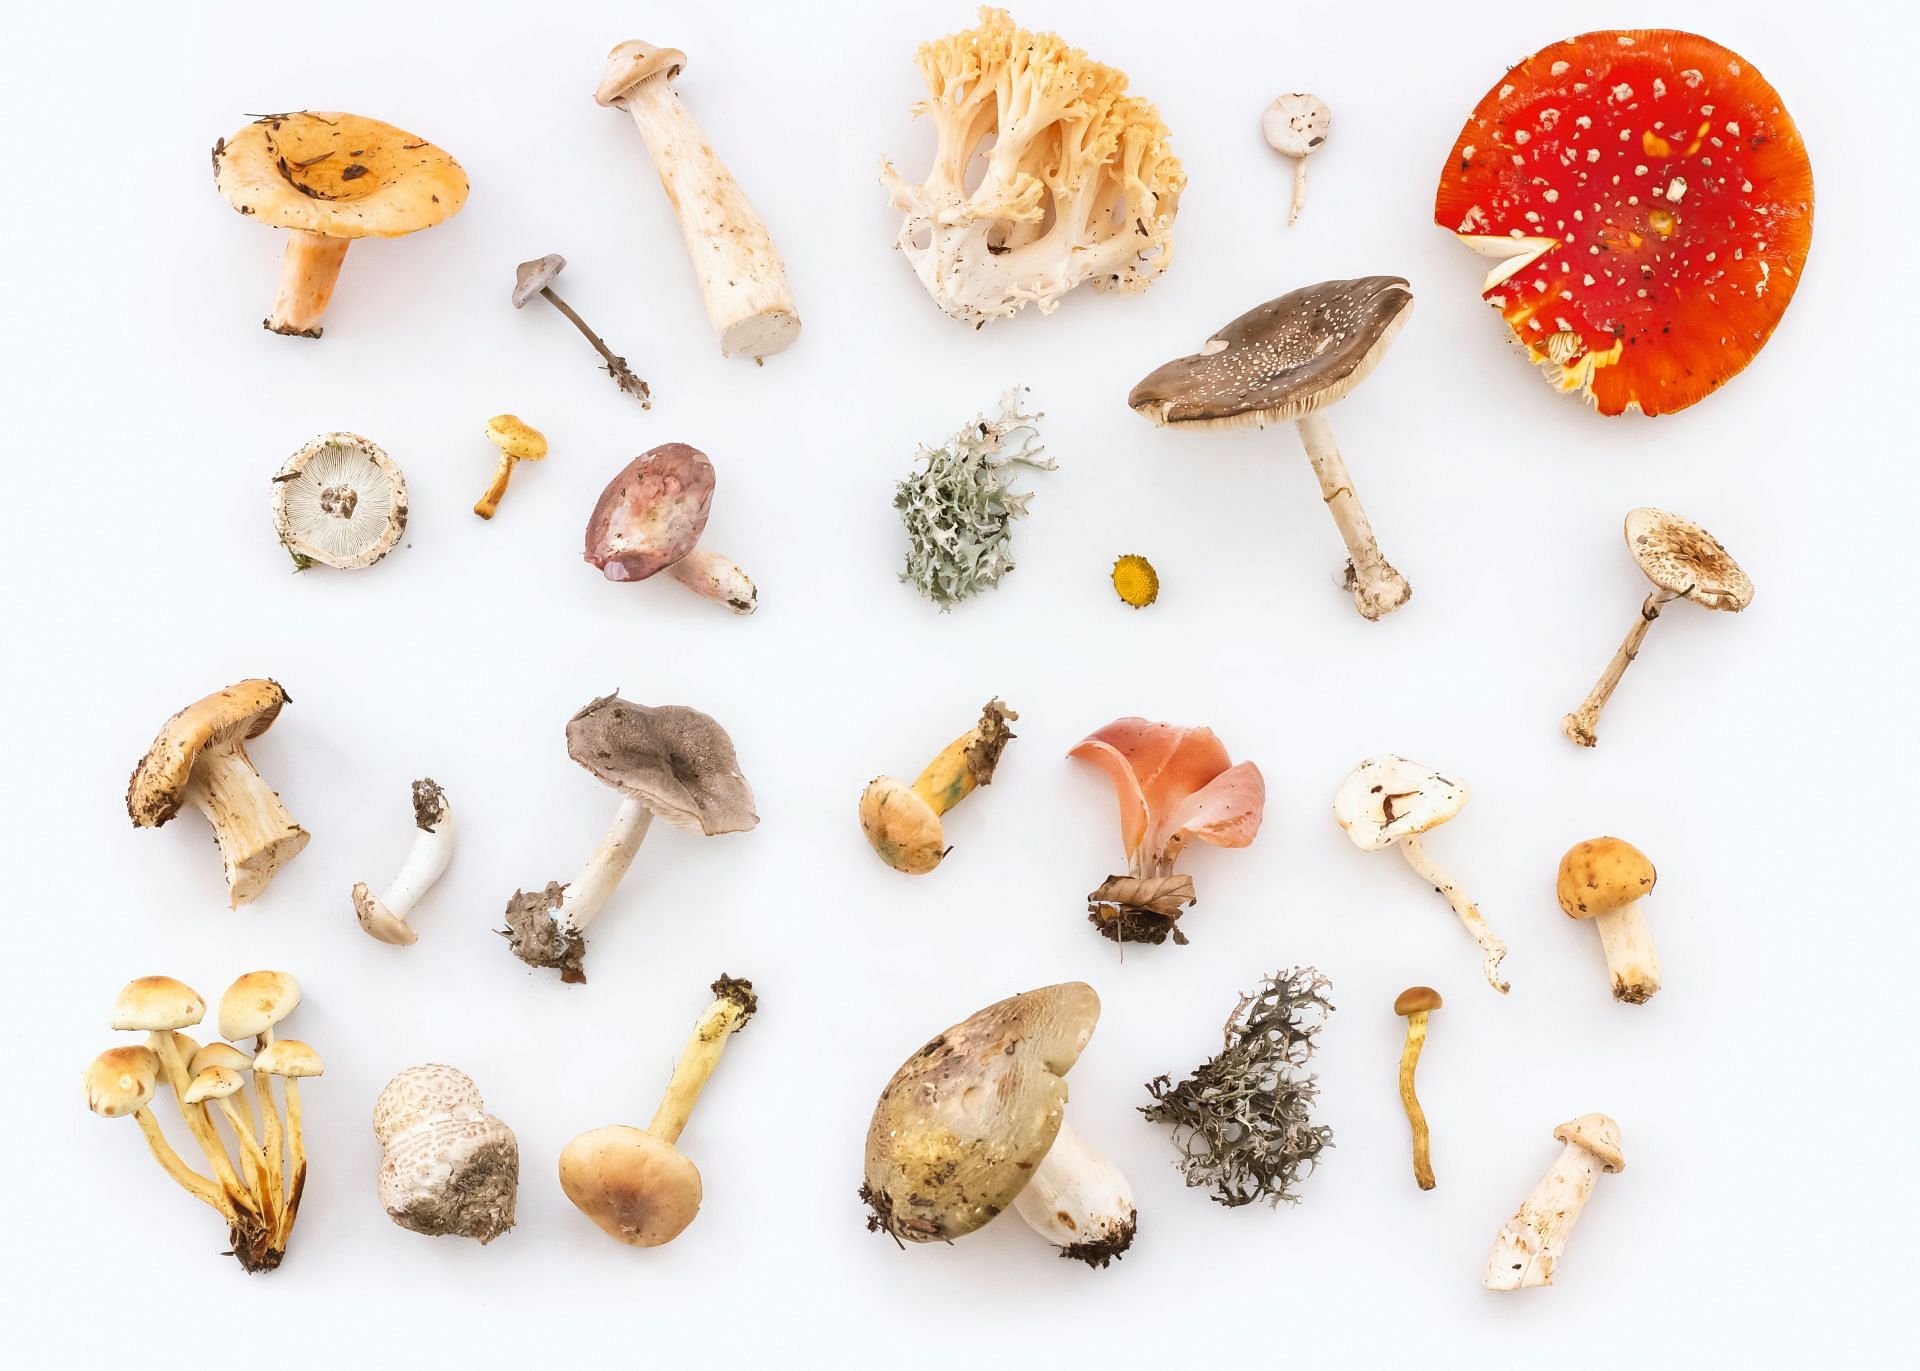 Types of mushrooms (Image via Unsplash/Irina)